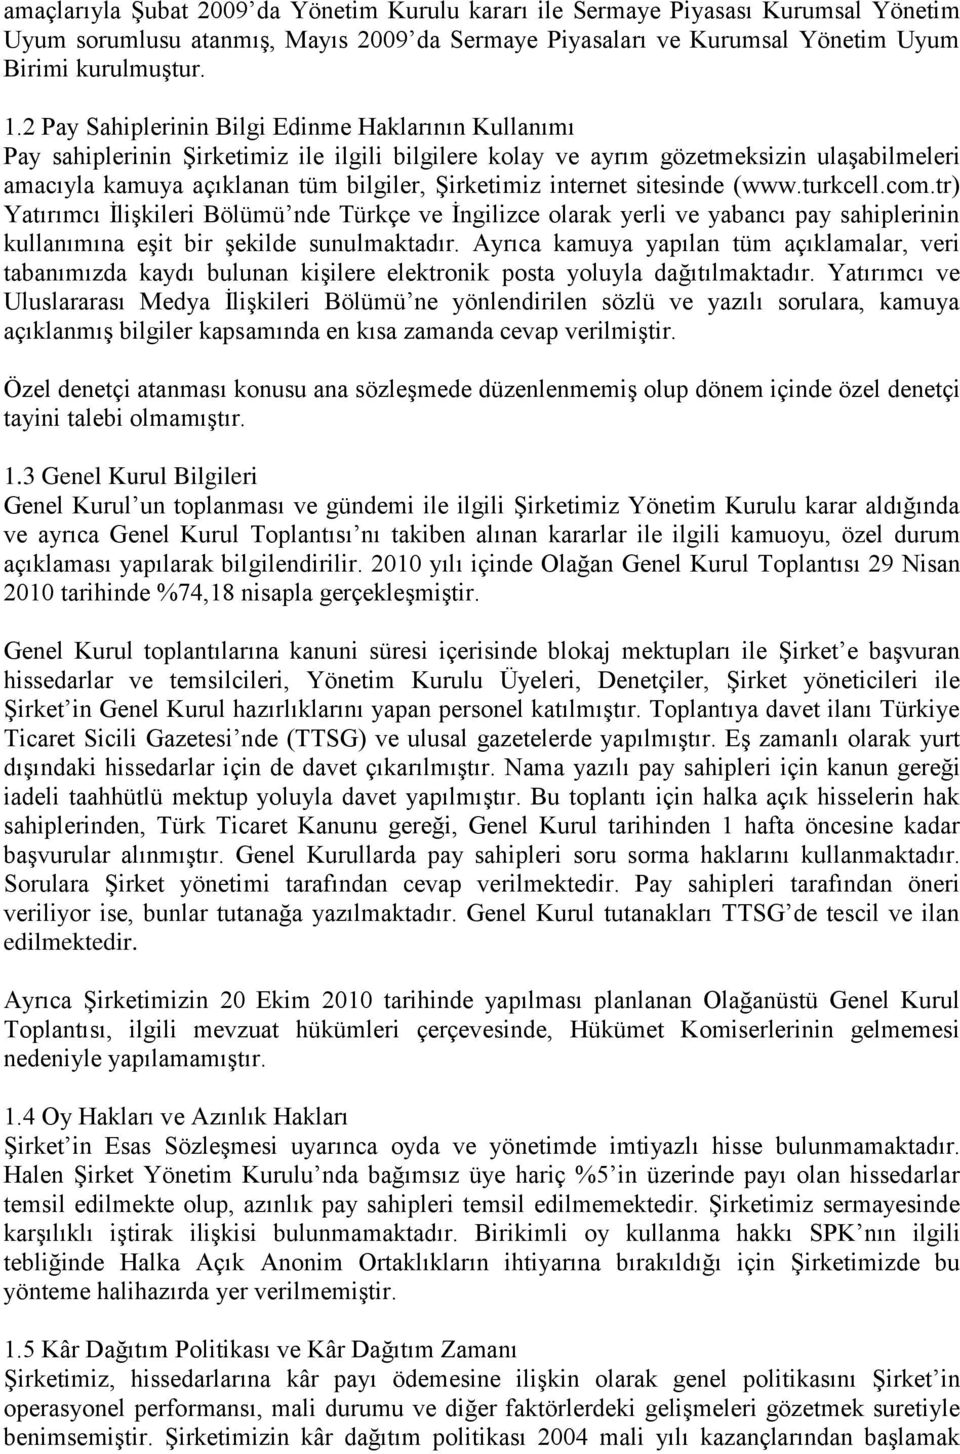 internet sitesinde (www.turkcell.com.tr) Yatırımcı İlişkileri Bölümü nde Türkçe ve İngilizce olarak yerli ve yabancı pay sahiplerinin kullanımına eşit bir şekilde sunulmaktadır.